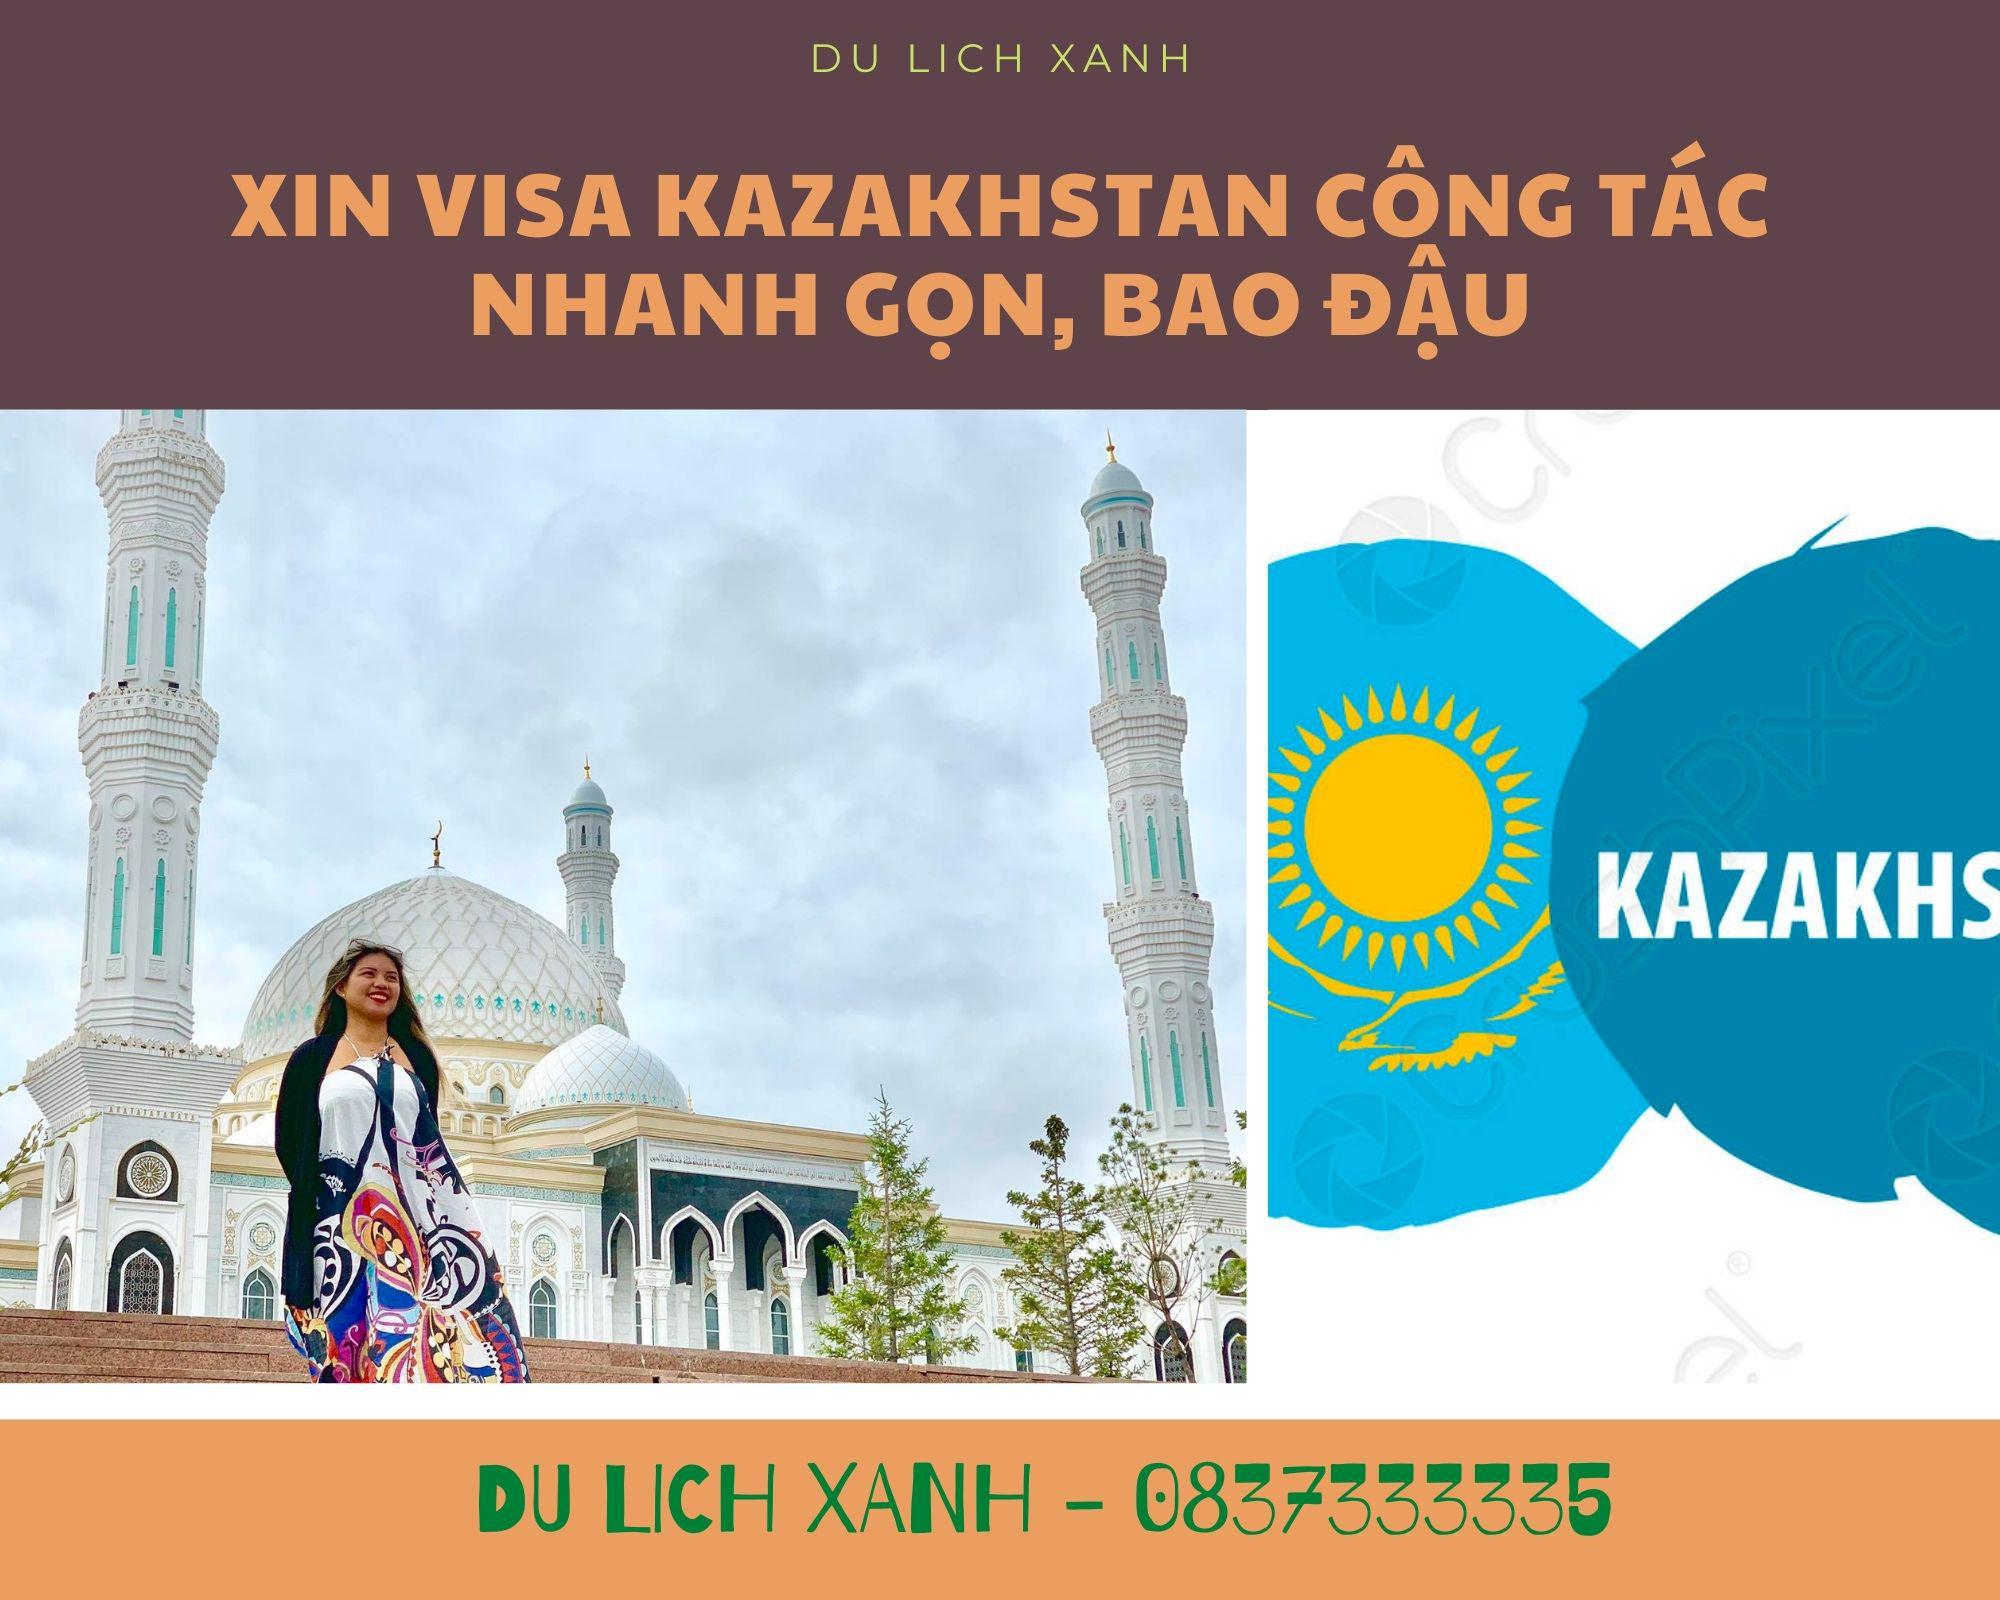 Xin Visa Kazakhstan công tác nhanh gọn, bao đậu